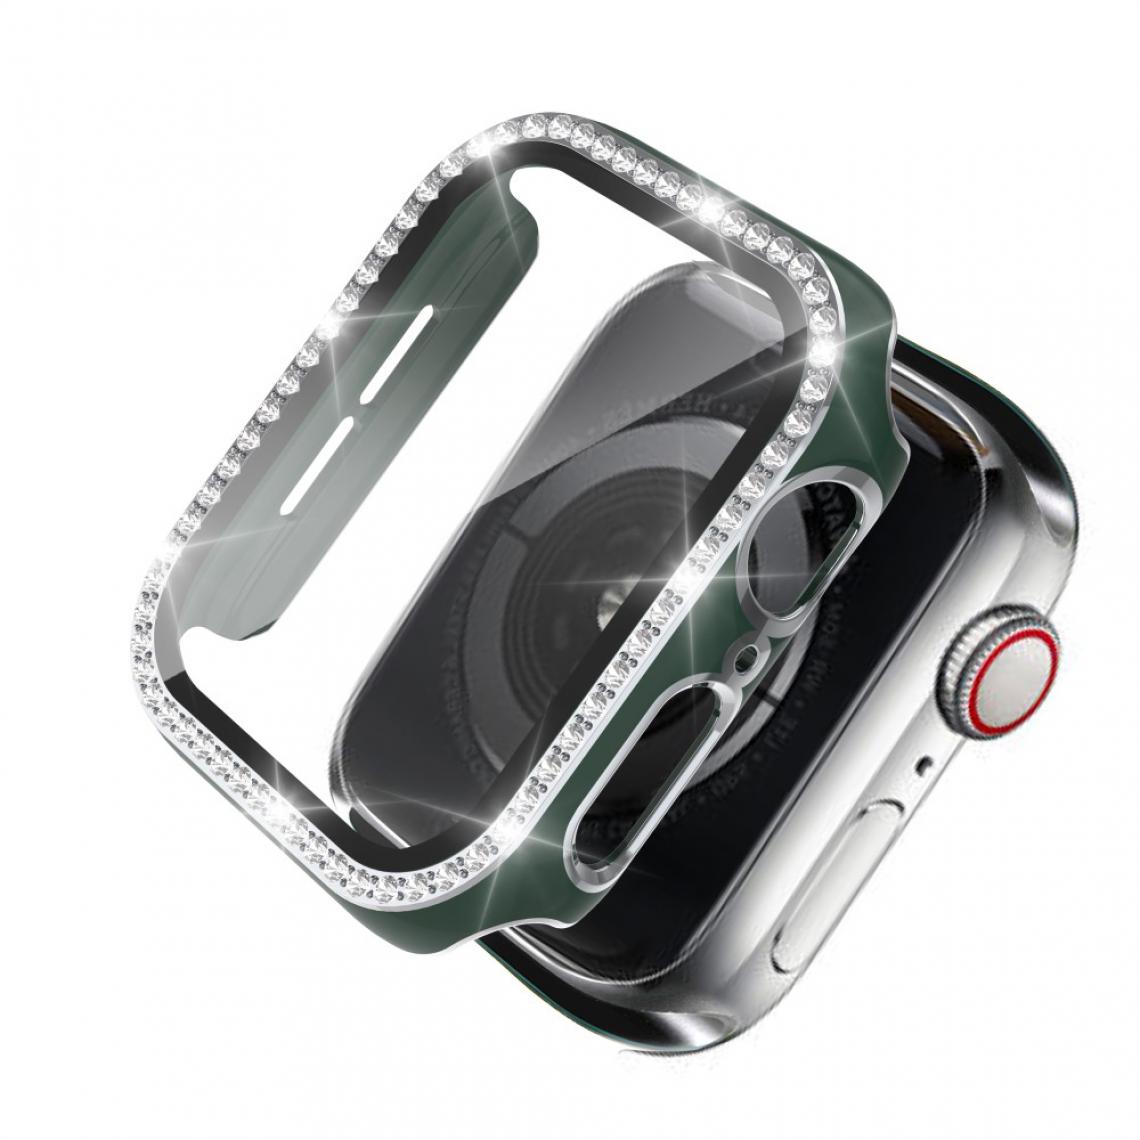 Other - Coque en TPU Cristal de strass de galvanoplastie bicolore vert/argent pour votre Apple Watch 4/5/6/SE 44mm - Accessoires bracelet connecté